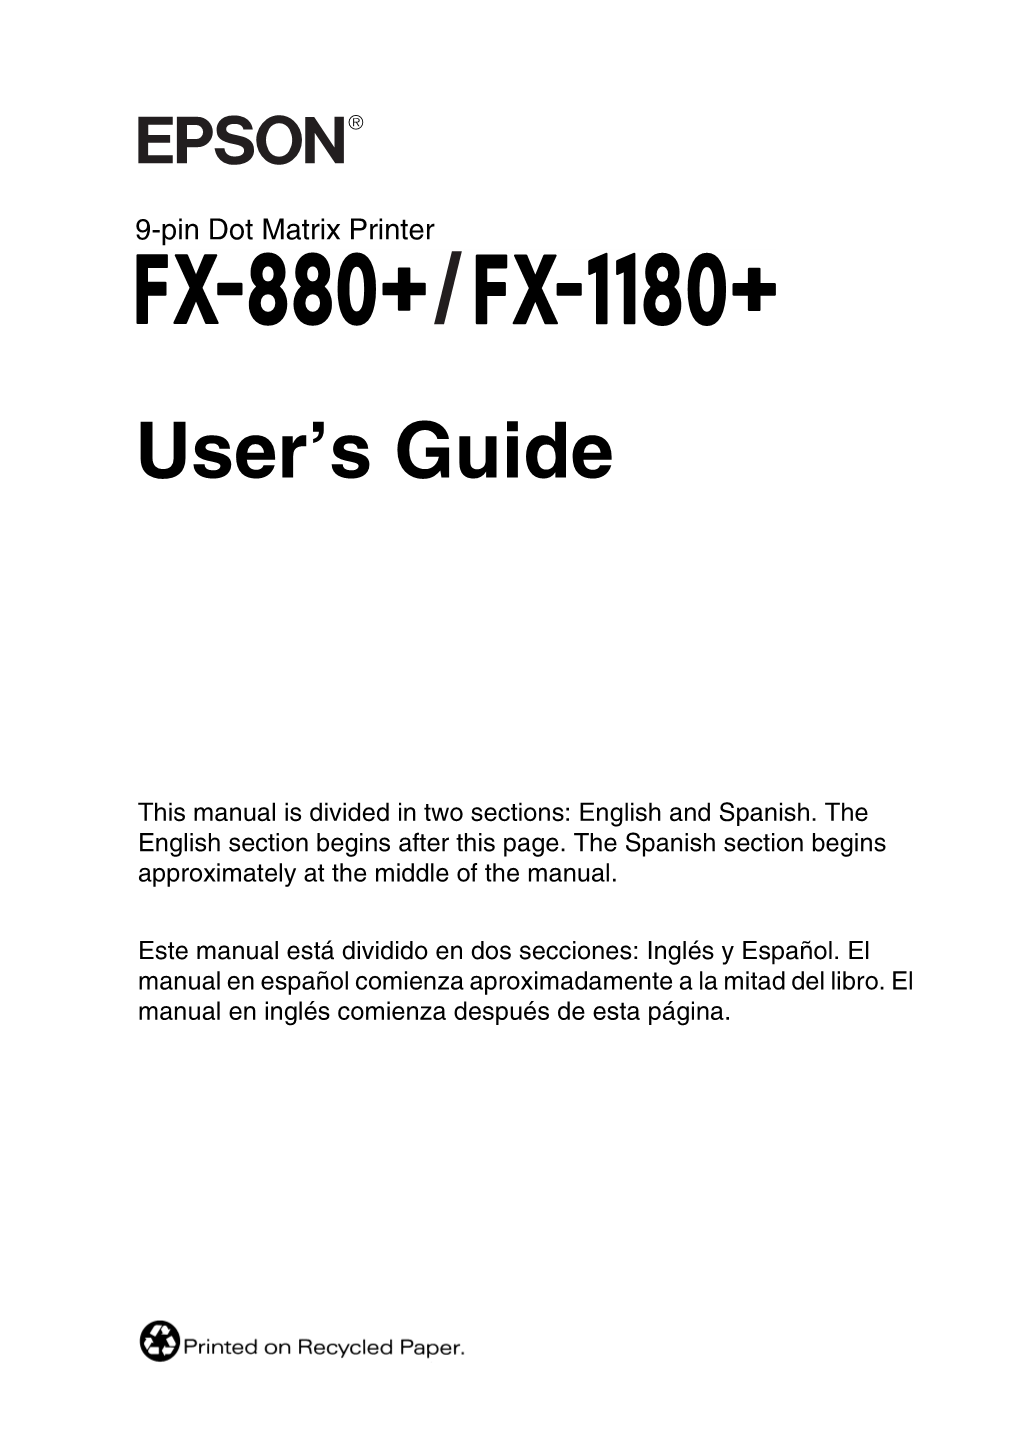 Fx-1180 / Fx-880+